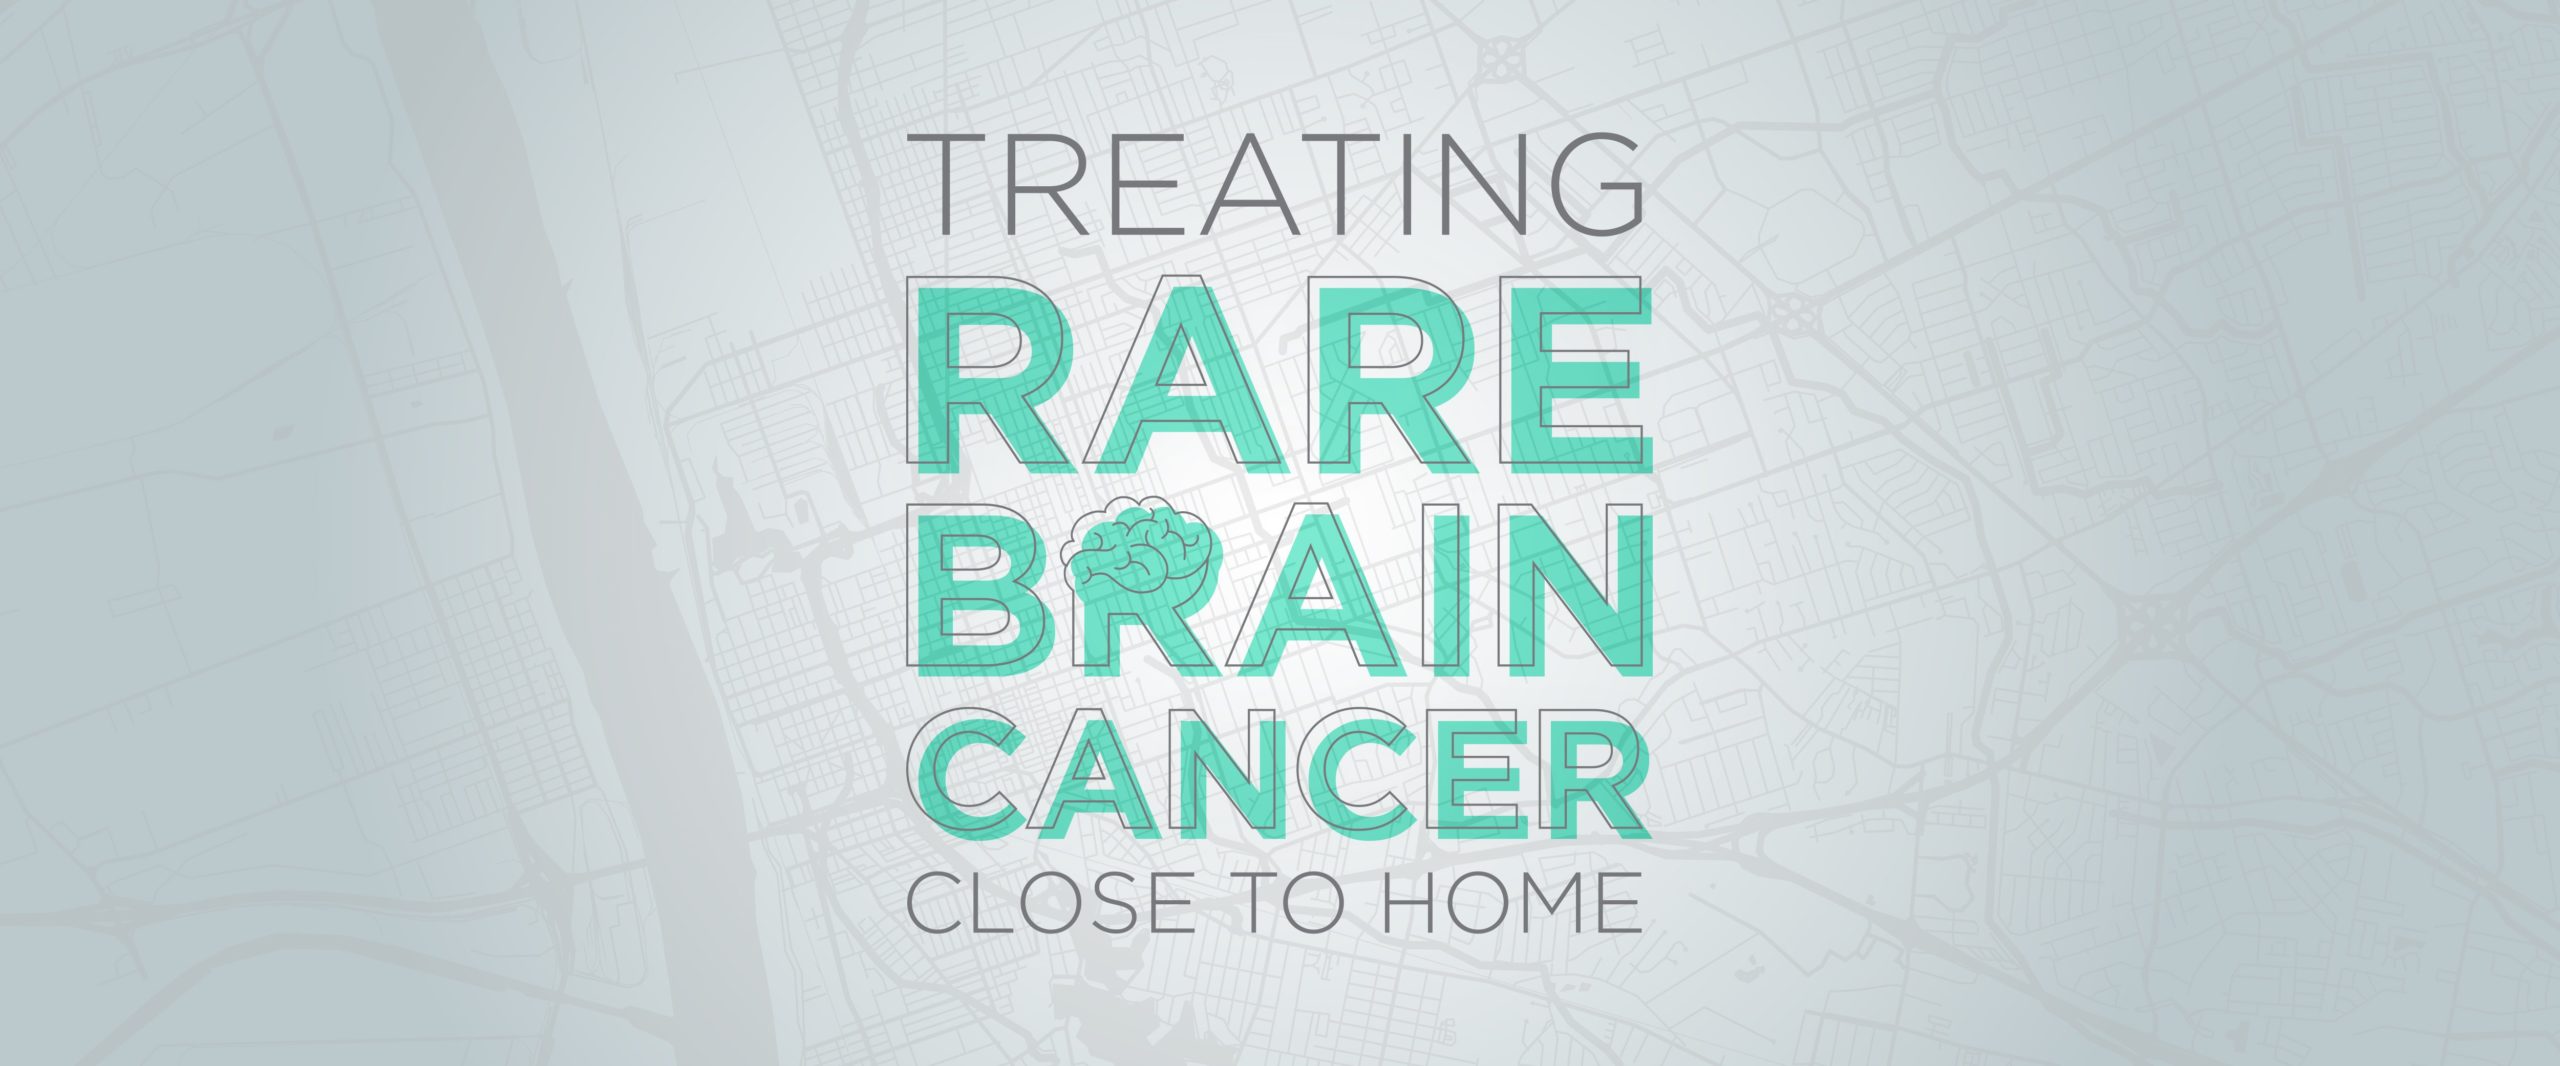 Treating rare brain cancer close to home